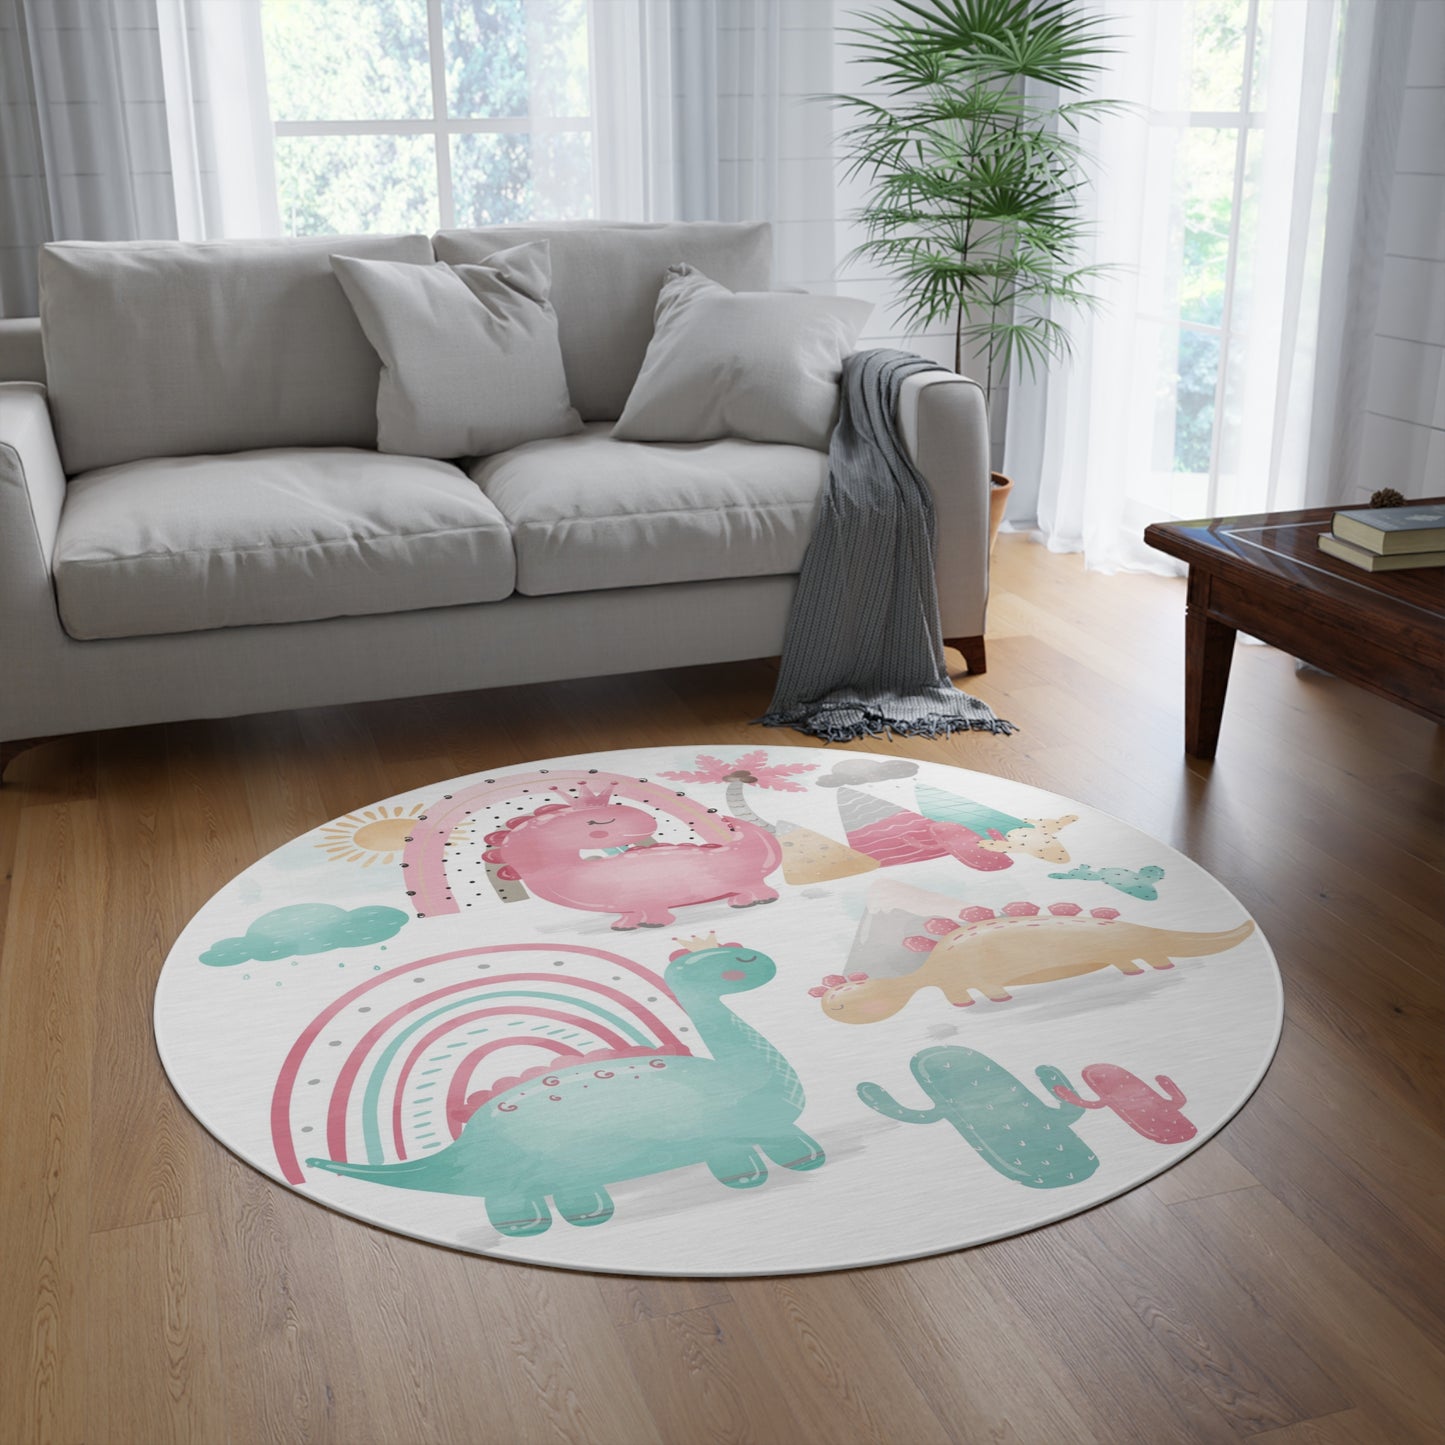 Pink dinosaur round rug, Dinosaur area rug, Dinosaur nursery decor - Pink Dinosaur